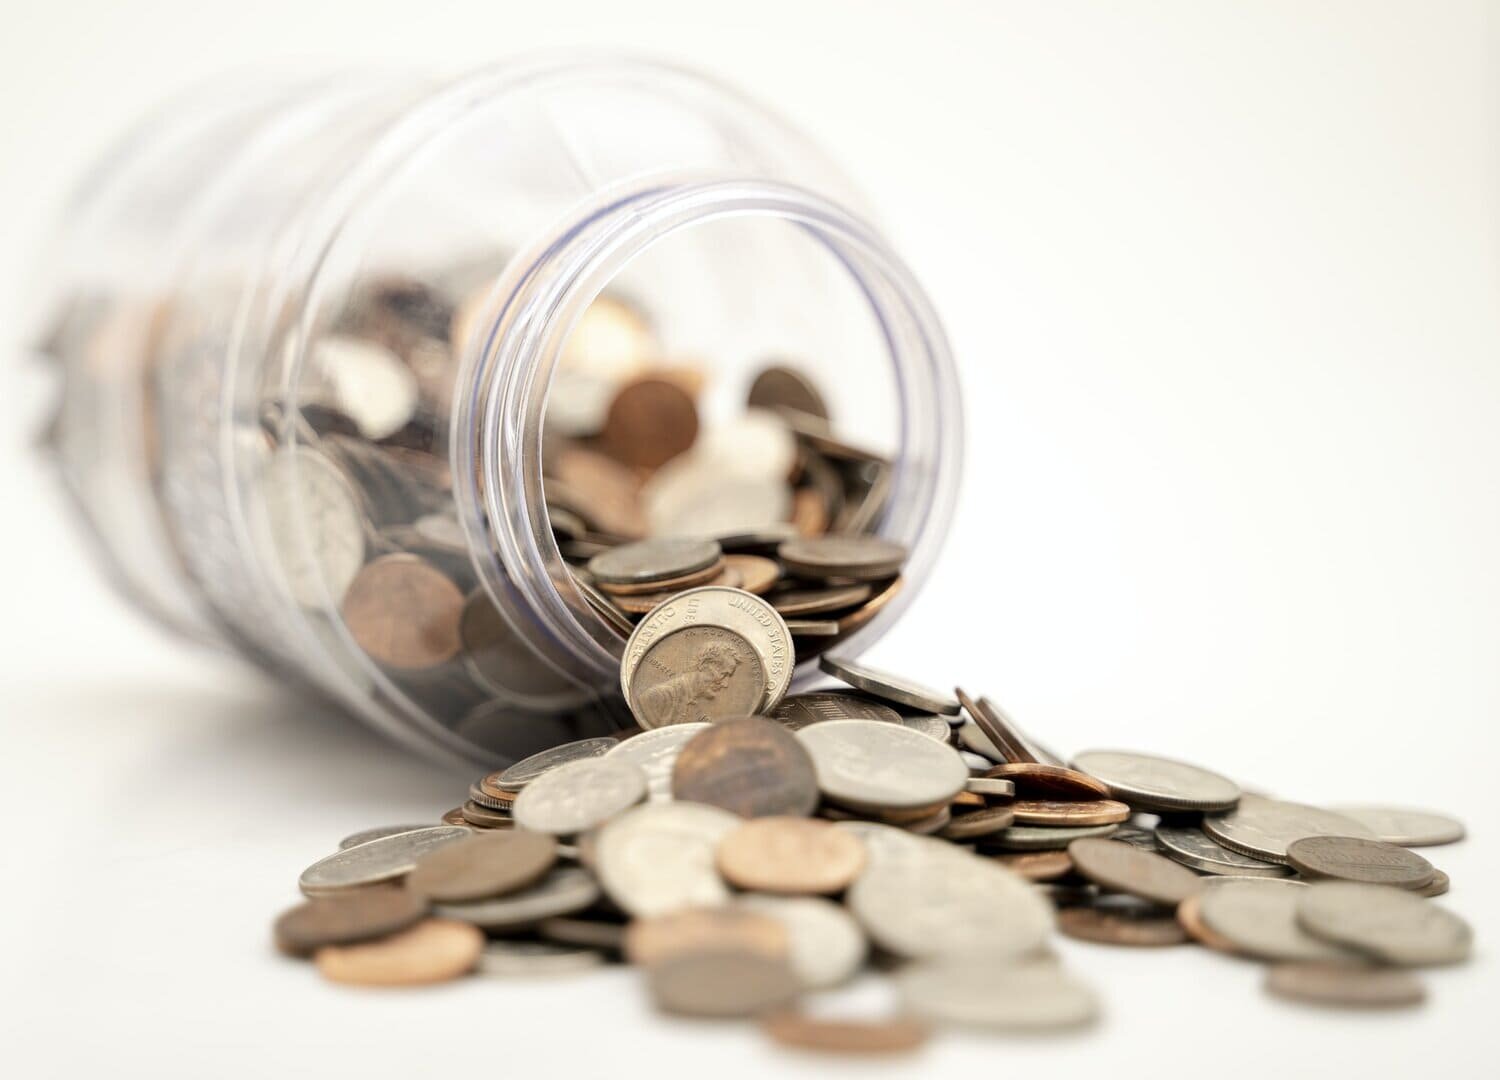 Un tarro de cristal lleno de monedas americanas tumbado de lado, derramando su contenido sobre una superficie blanca que sirve de metáfora del gasto de dinero.